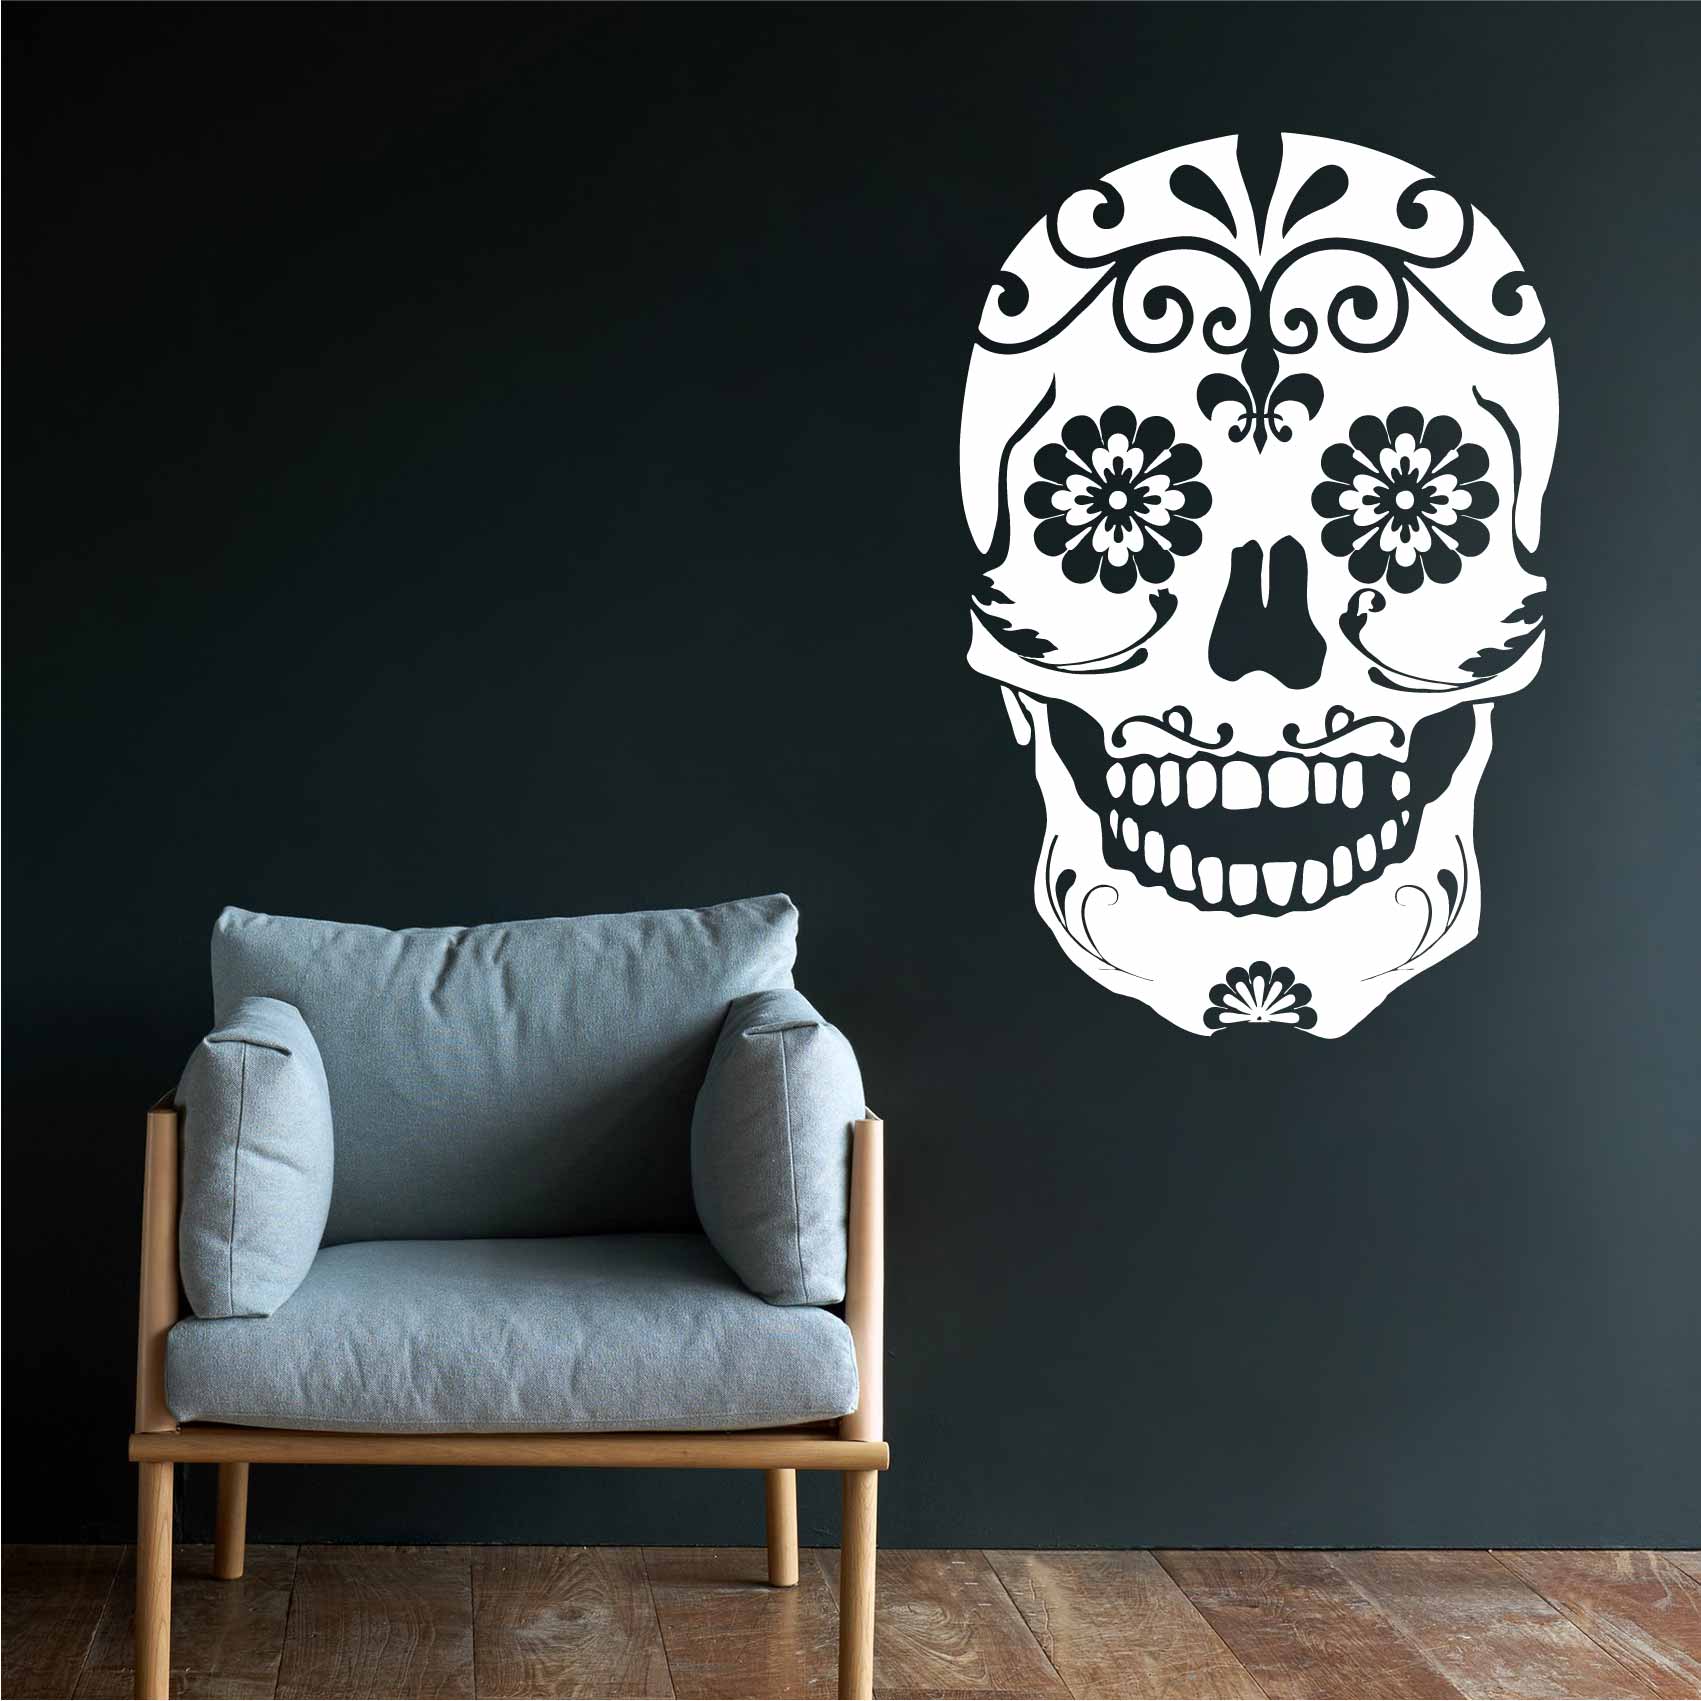 https://media.cdnws.com/_i/61411/2535/2351/35/stickers-tete-de-mort-mexicaine-ref3skull-stickers-muraux-tete-de-mort-autocollant-deco-chambre-salon-sticker-mural-crane.jpeg